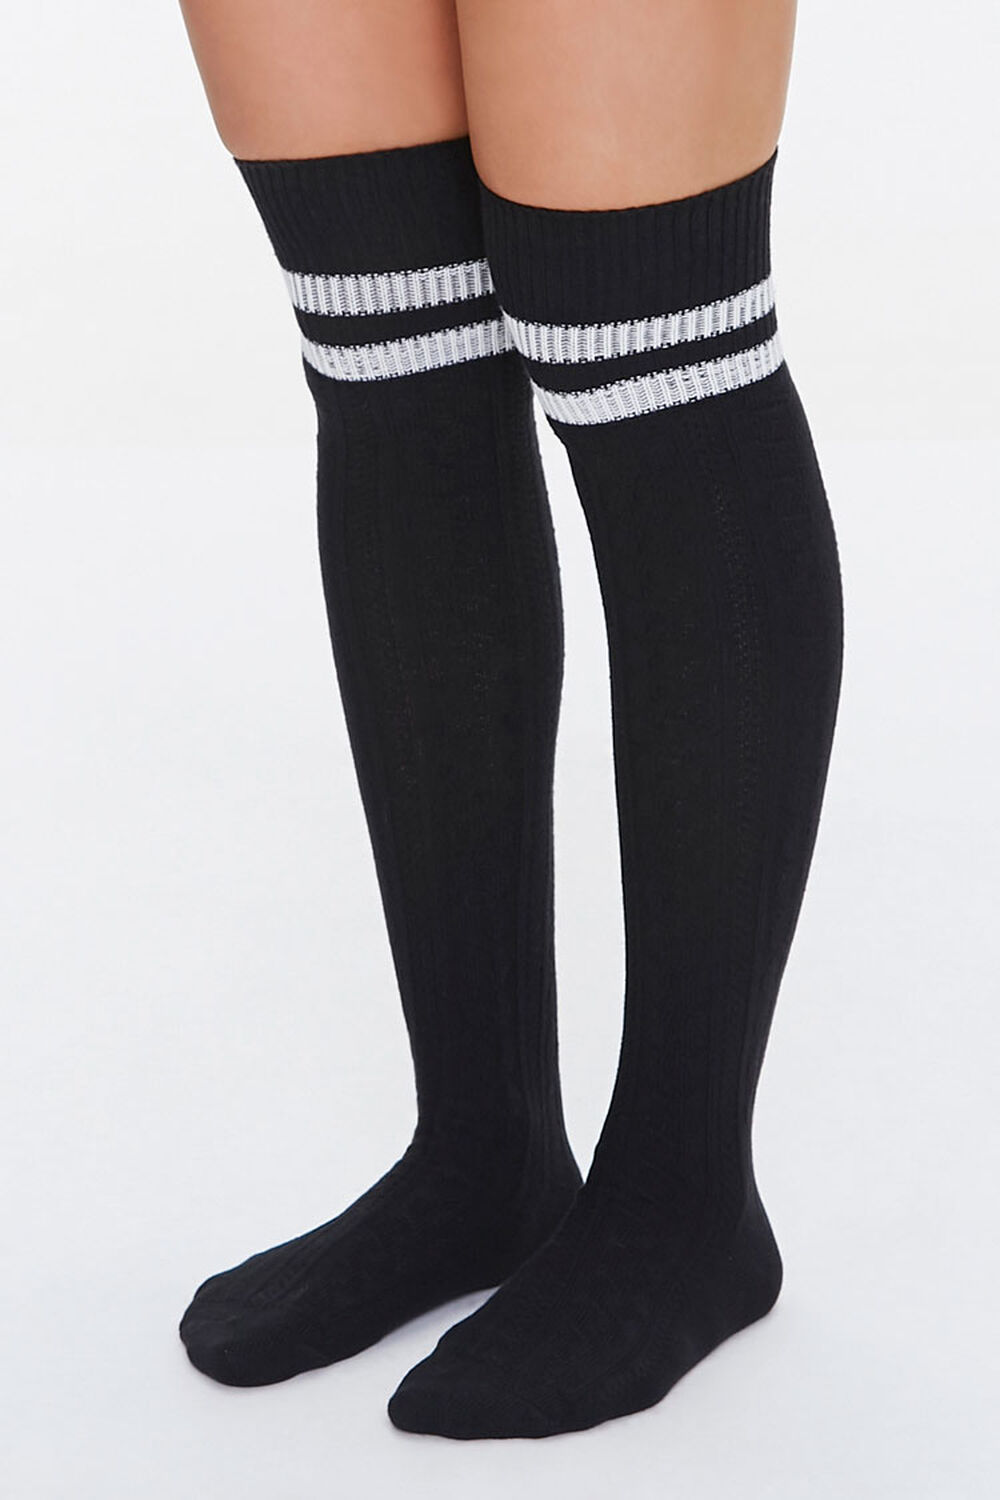 BLACK/WHITE Over-the-Knee Striped Socks, image 1